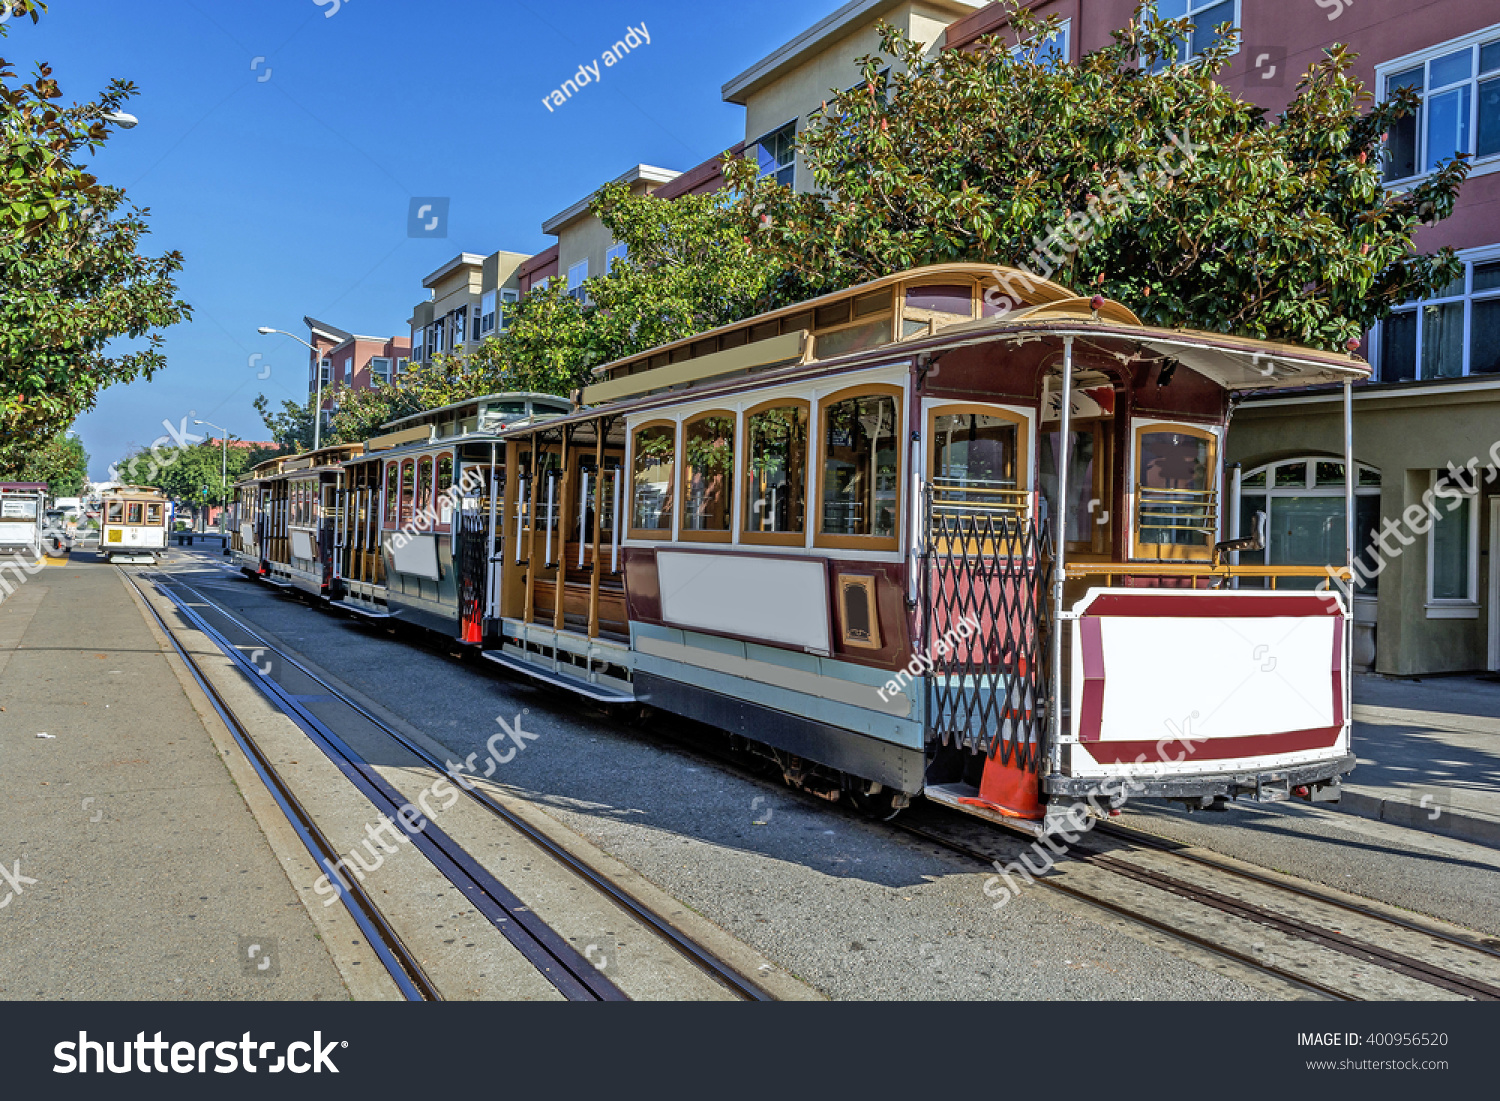 Канатный трамвай. Канатный трамвай Сан-Франциско. Сан Франциско Cable car. Сан Франциско трамвайчик. Канатная дорога Сан Франциско.